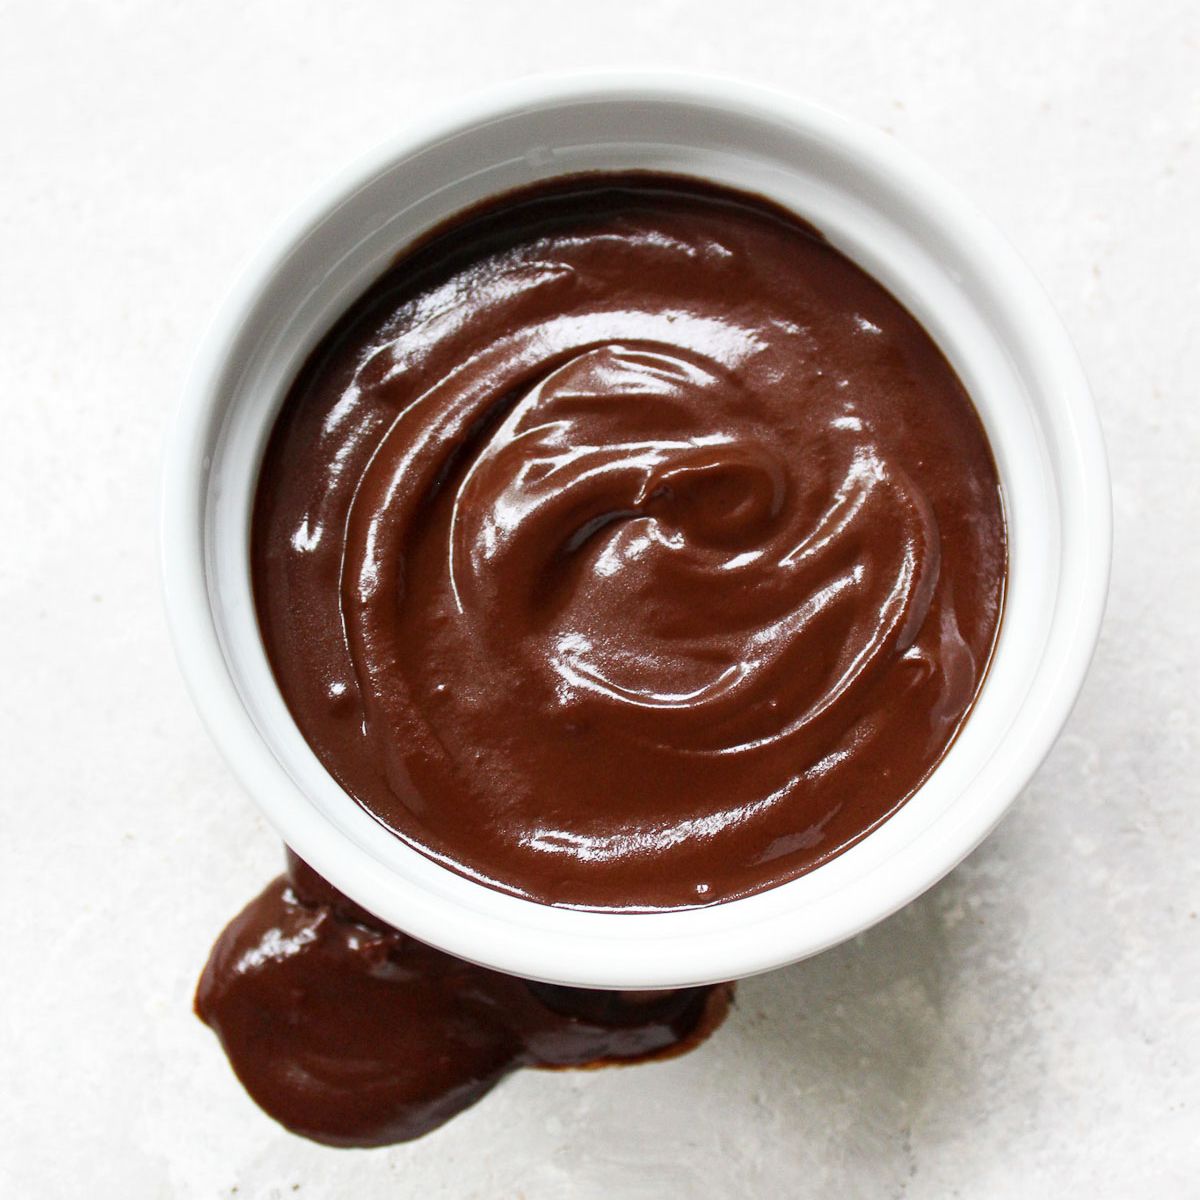 Có bao nhiêu bước để làm pudding socola bằng bột pha sẵn?
